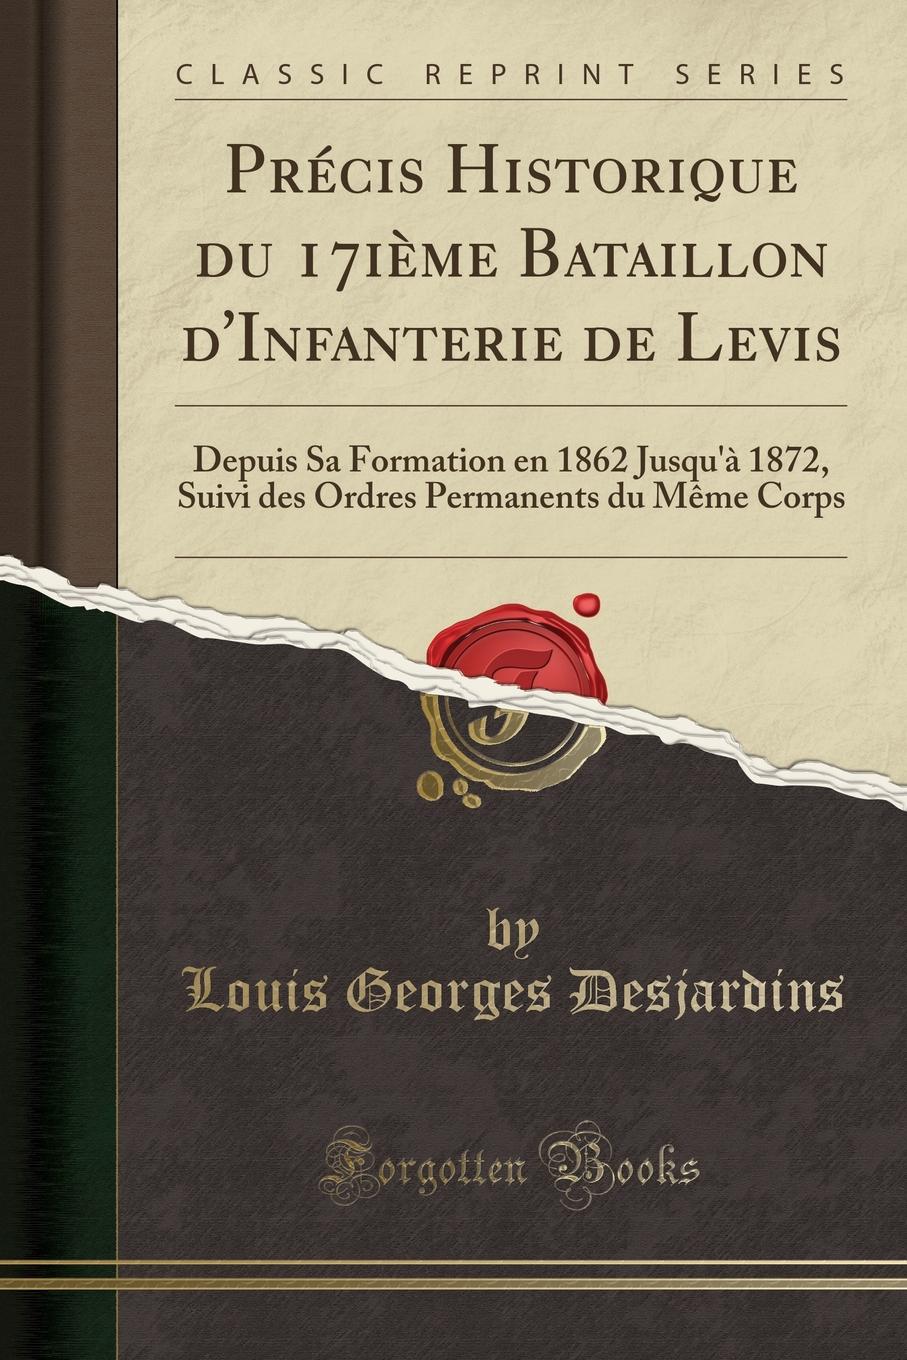 Louis Georges Desjardins Precis Historique du 17ieme Bataillon d.Infanterie de Levis. Depuis Sa Formation en 1862 Jusqu.a 1872, Suivi des Ordres Permanents du Meme Corps (Classic Reprint)